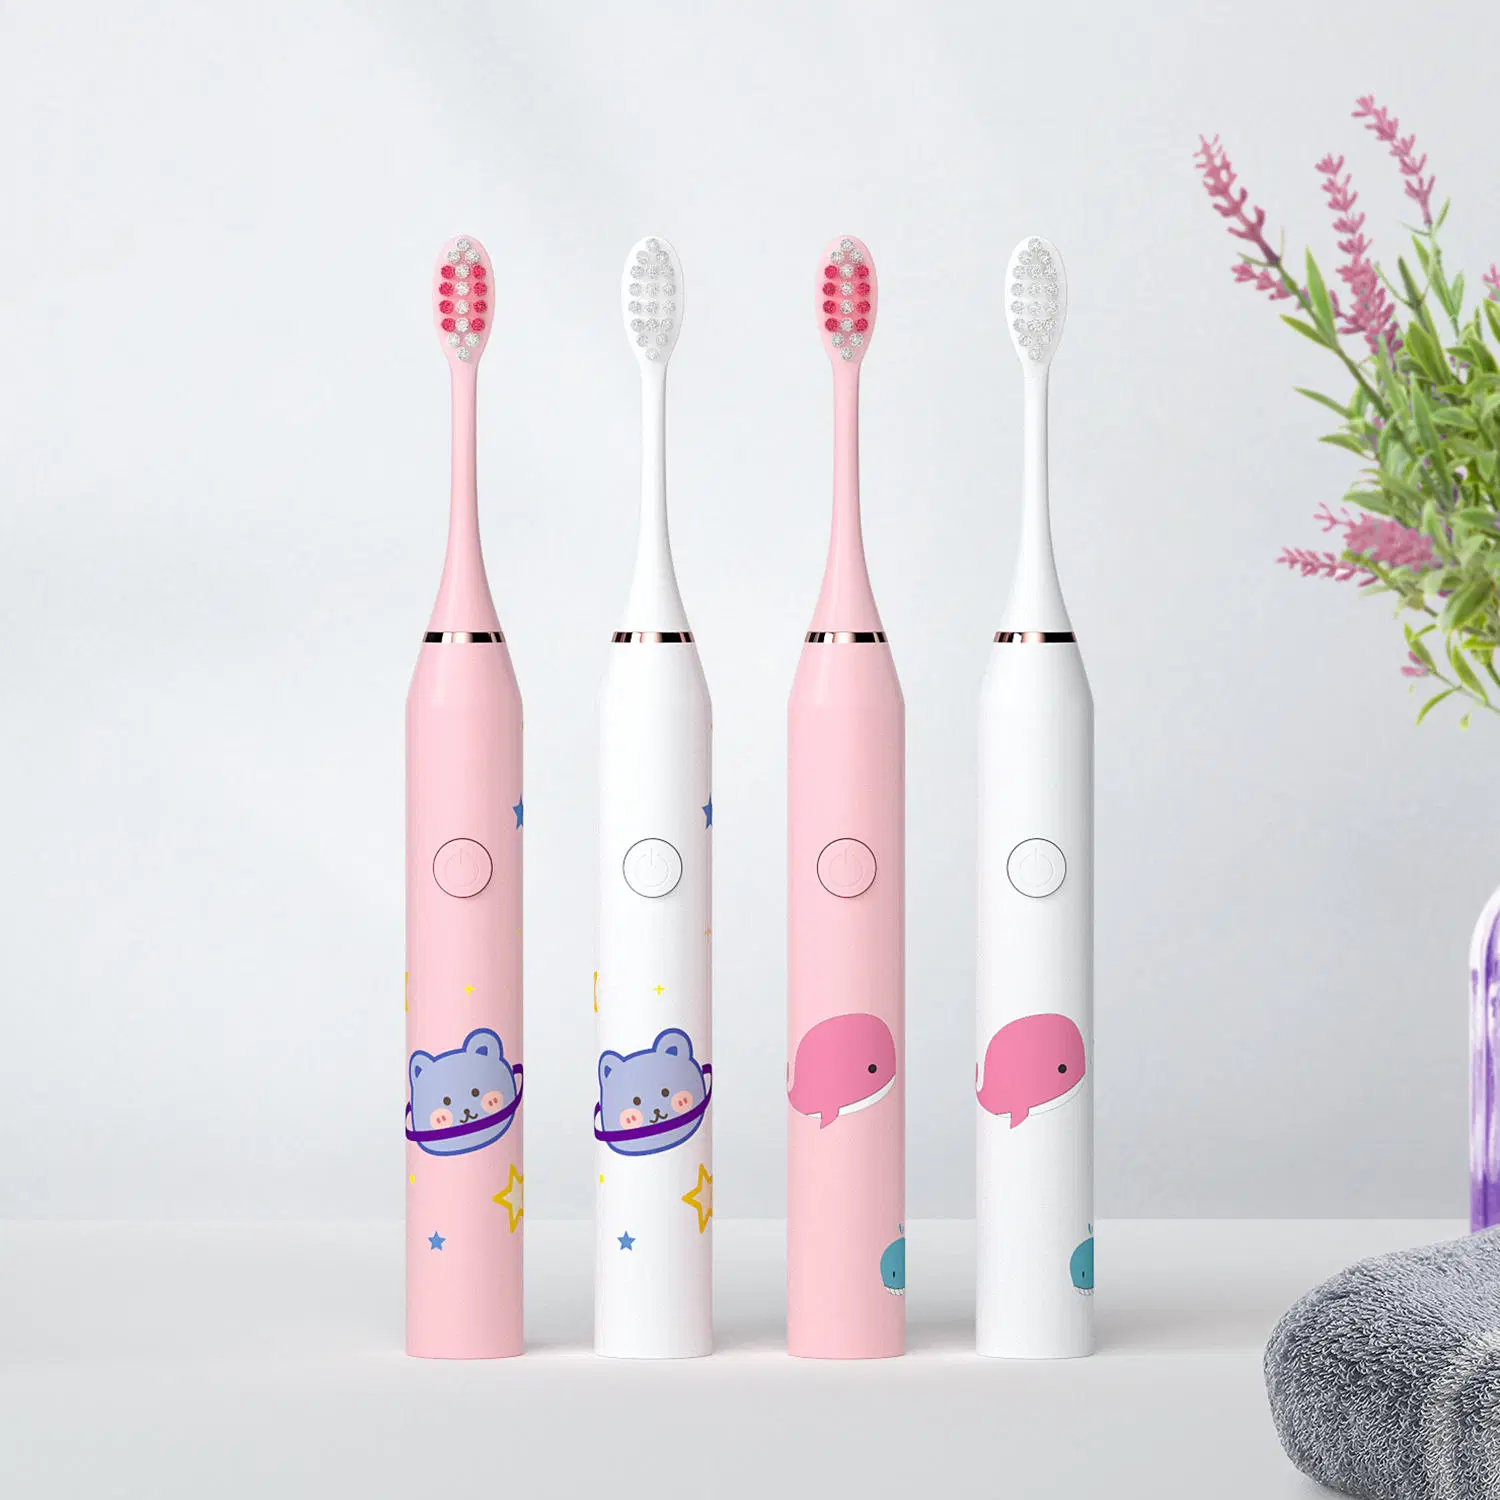 Sonic recargable Cartoon Smart cepillos de dientes para niños cepillo de dientes eléctrico impermeable para niños